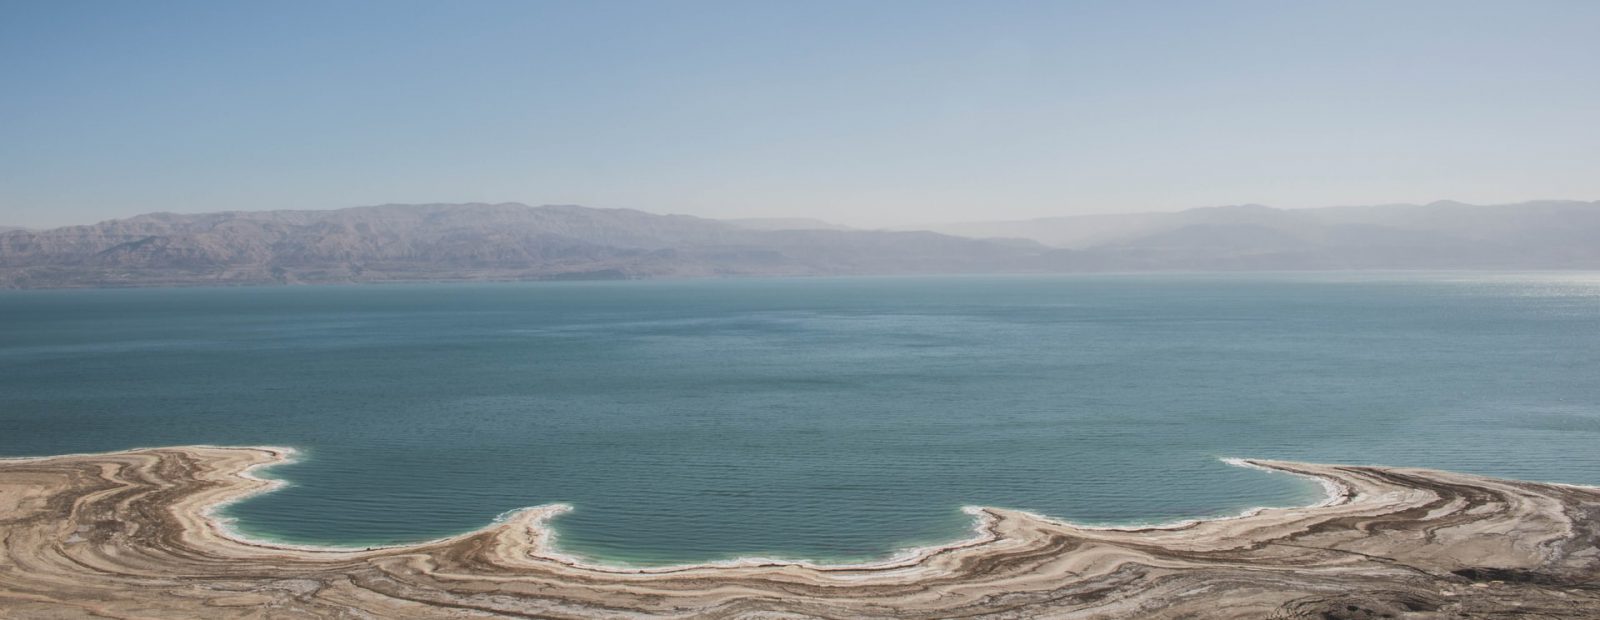 10 curiosidades sobre o Mar Morto que você não sabia